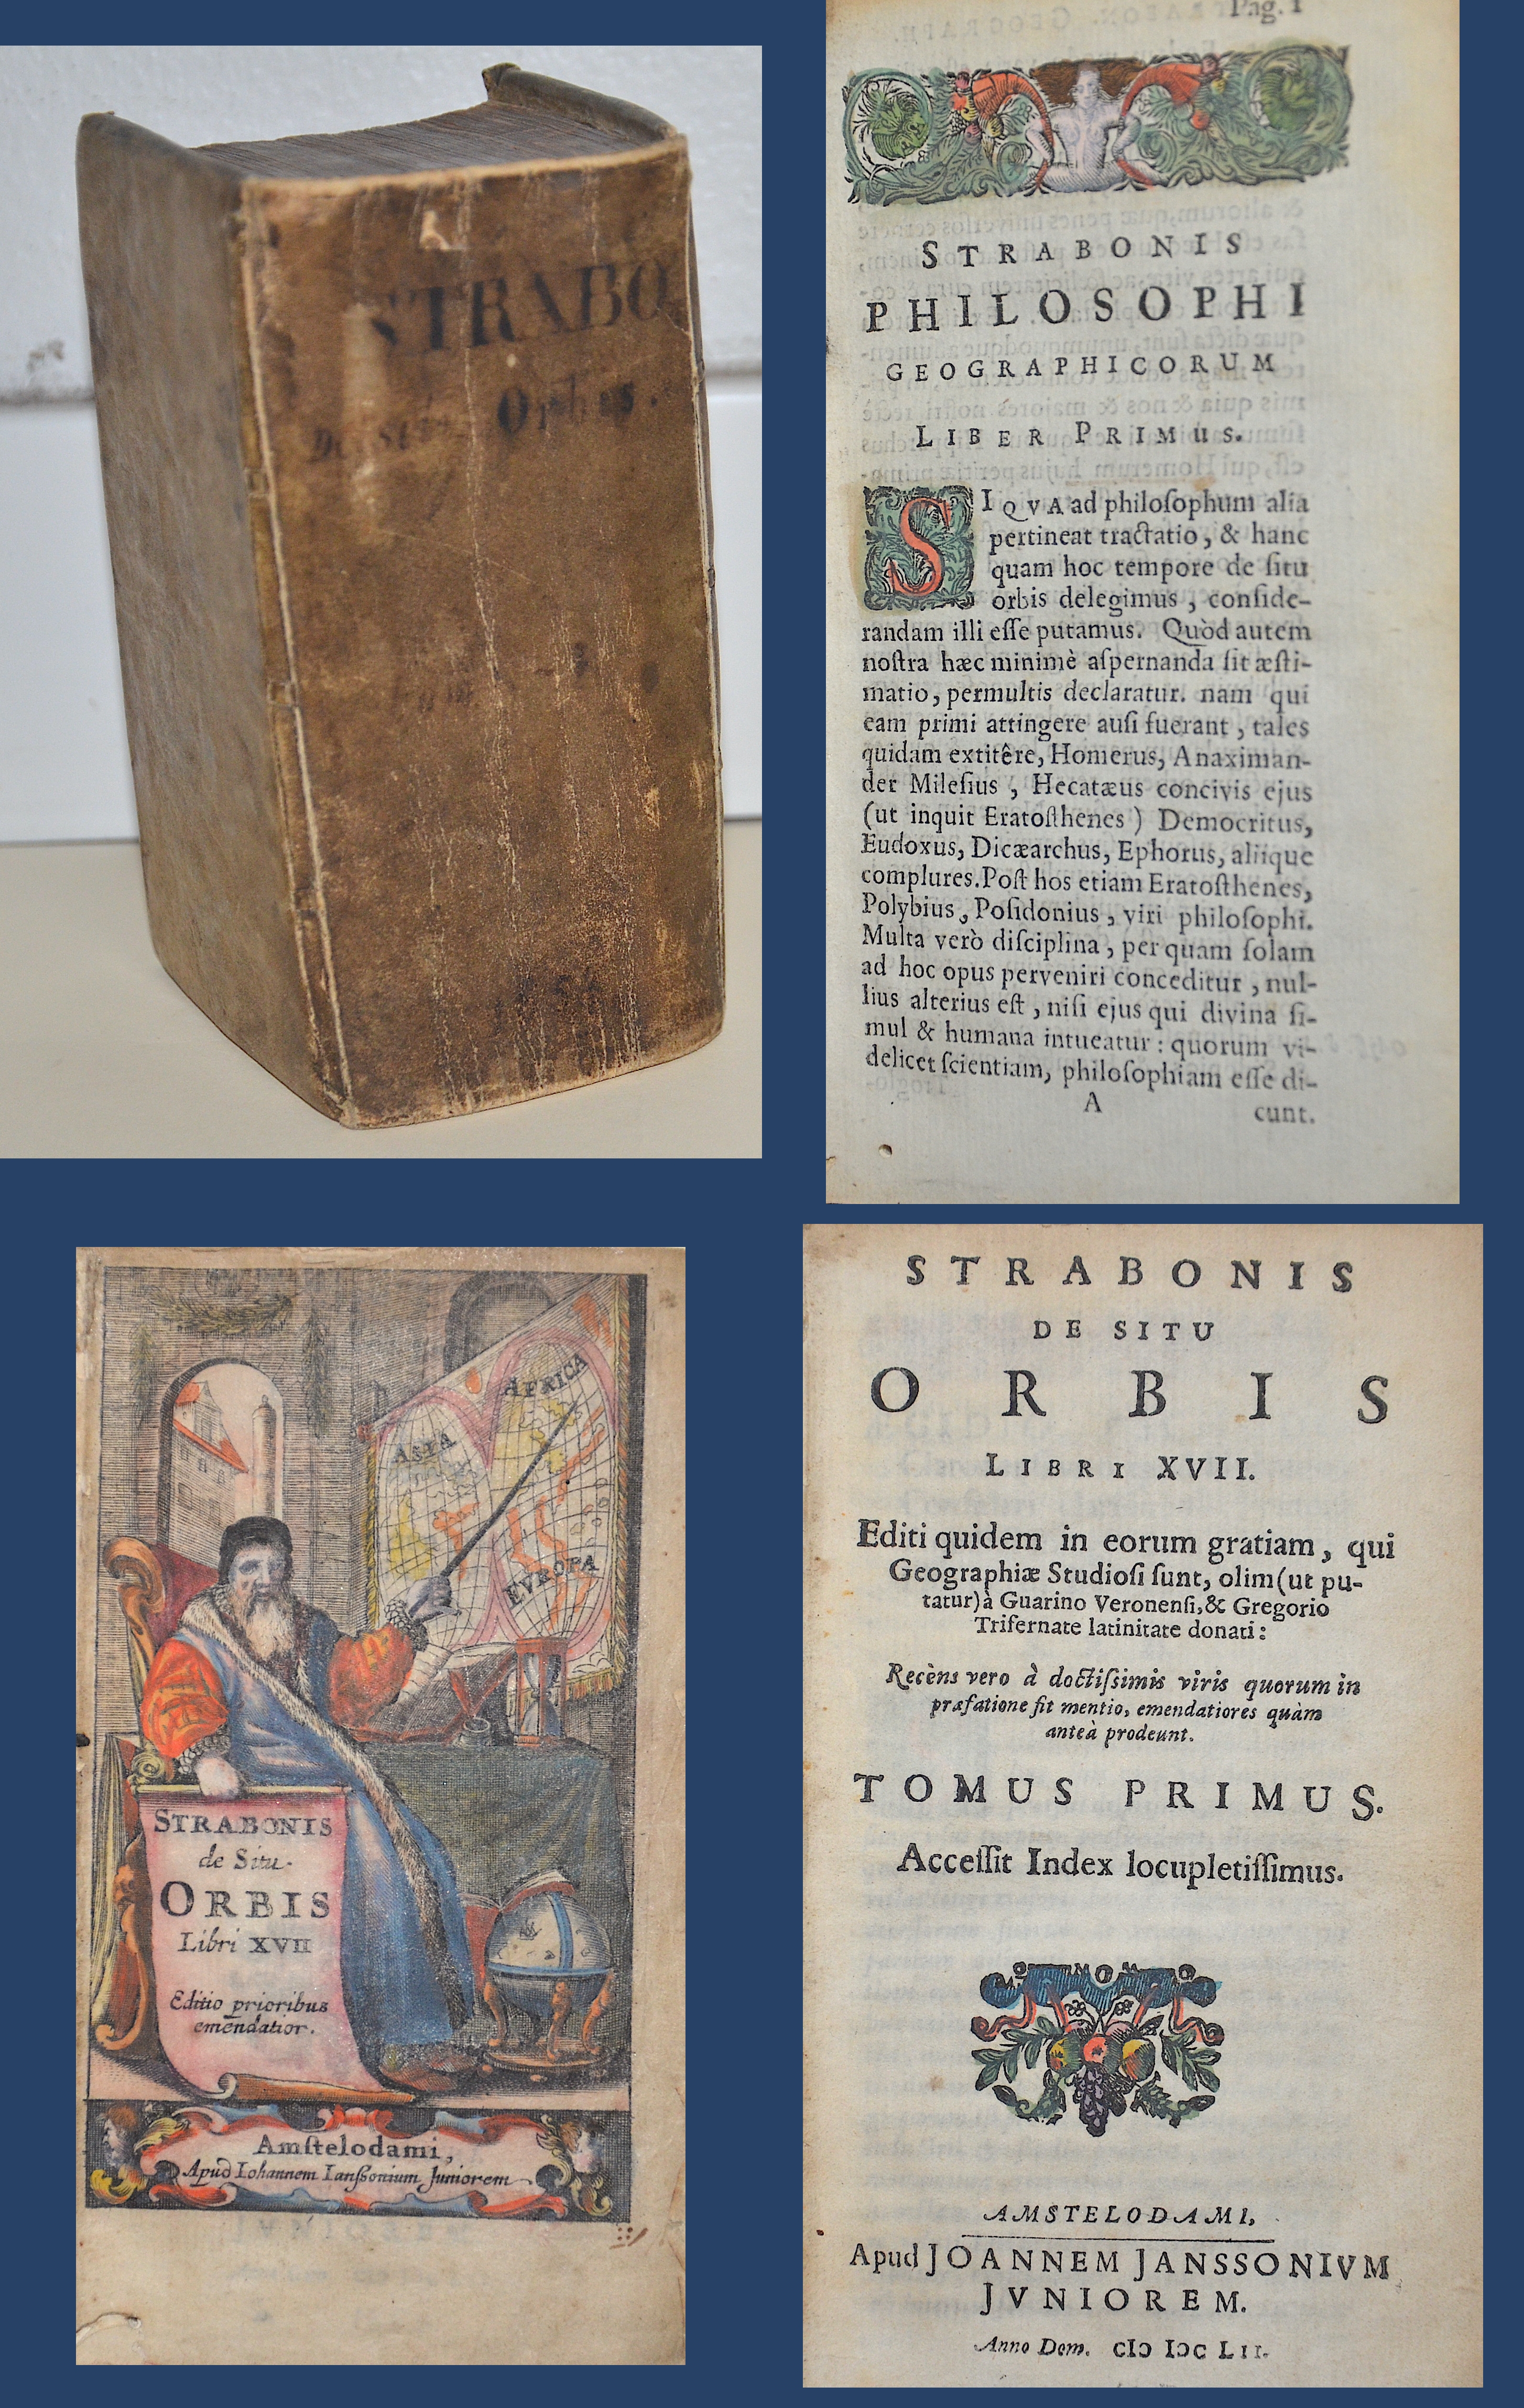 Janssonius Johann Strabonis de Situ Orbis Libri XVII Editio prioribus emendatior.